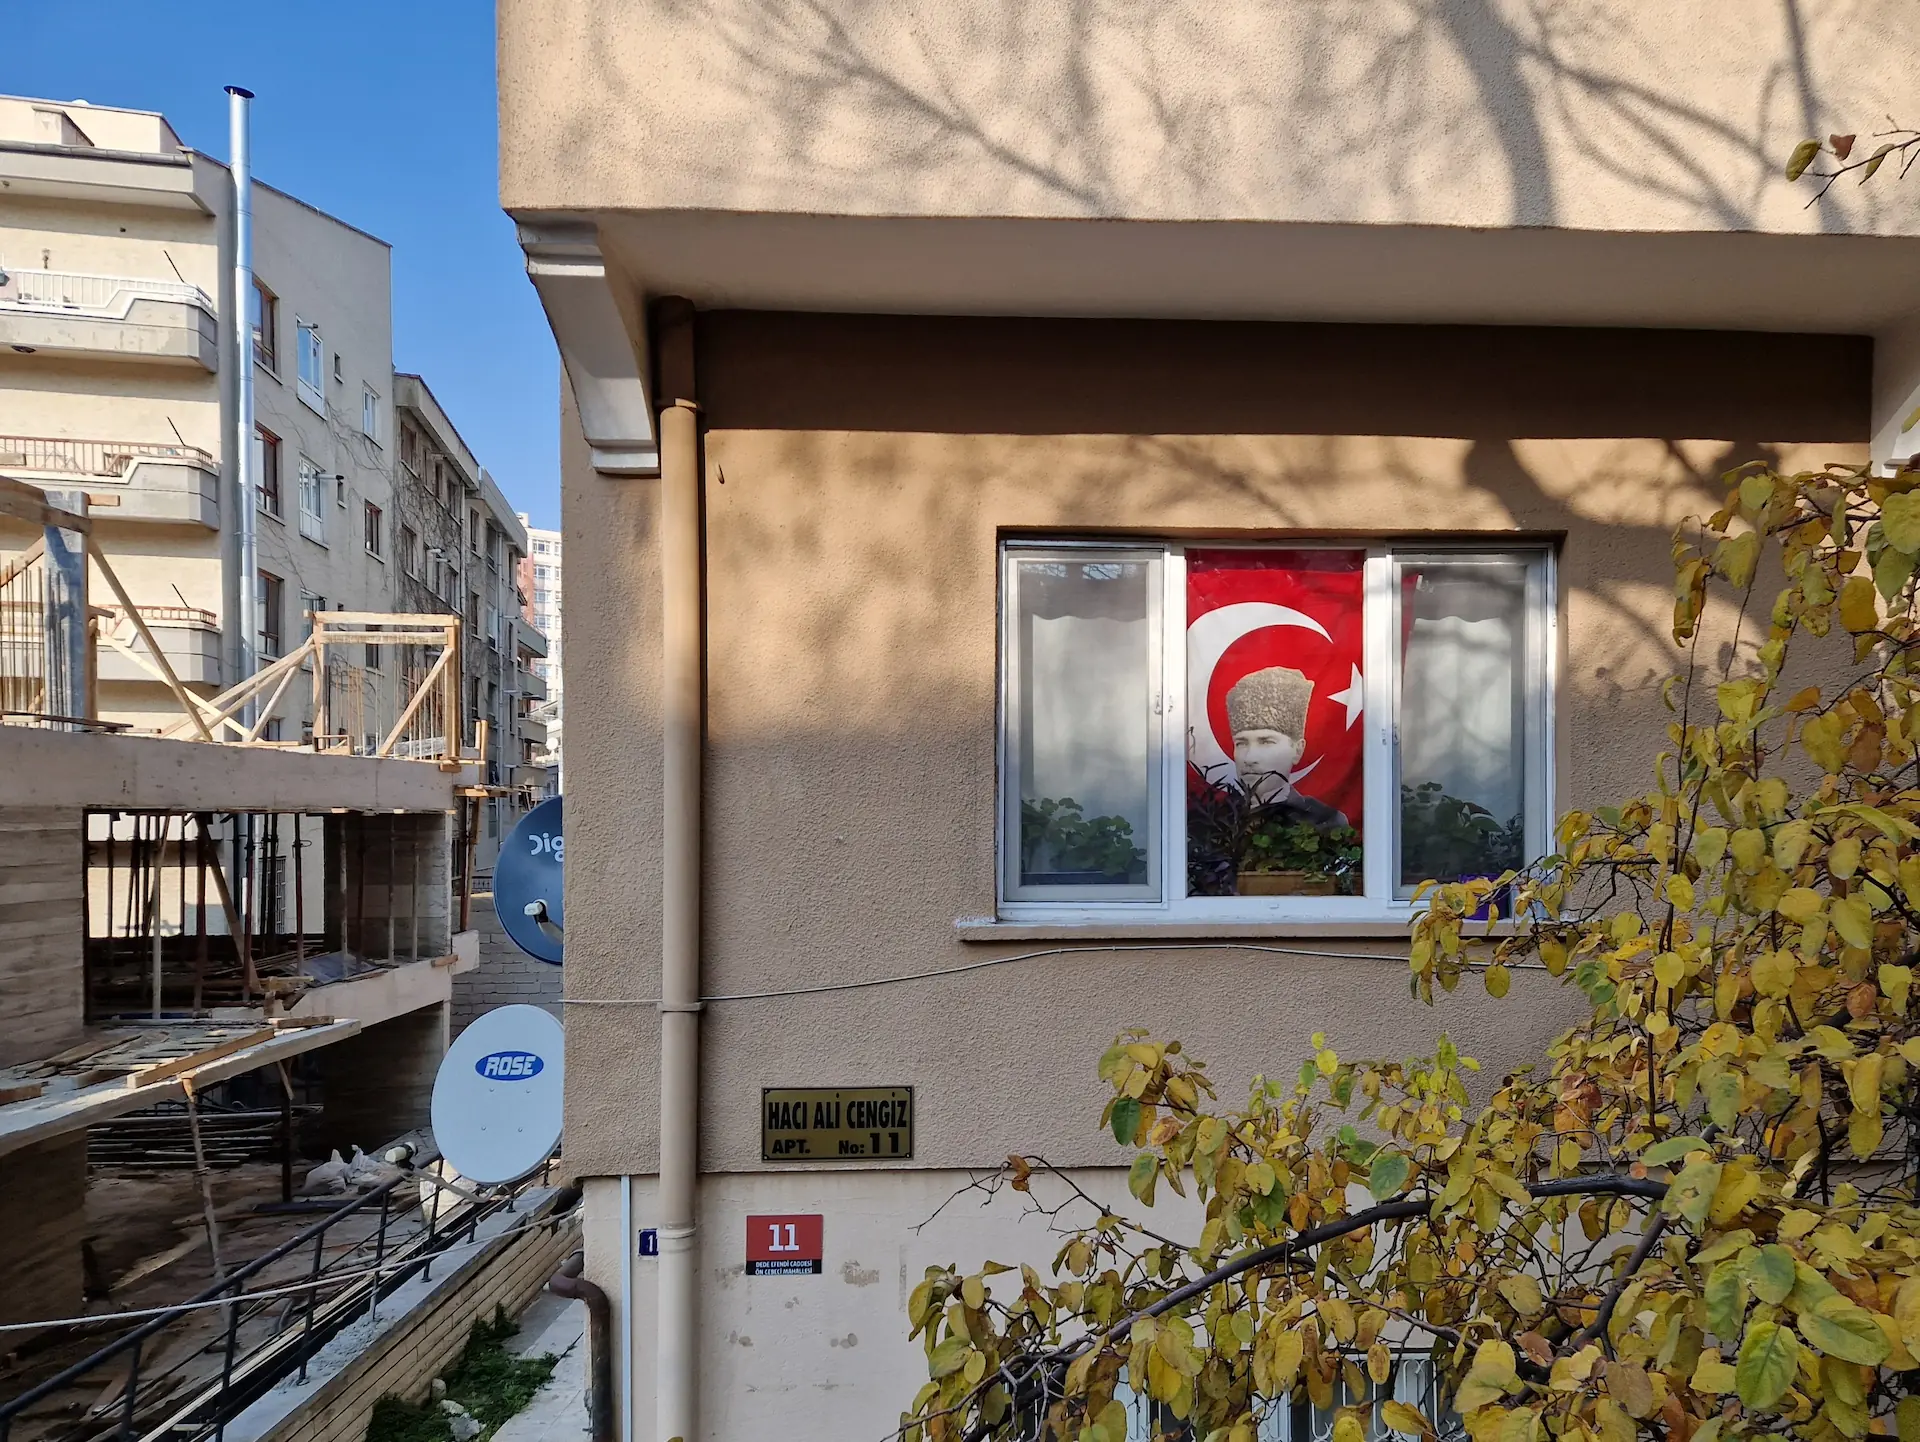 À la fenêtre d'un immeuble lambda, le portrait d'Atatürk sur fond de drapeau turc.